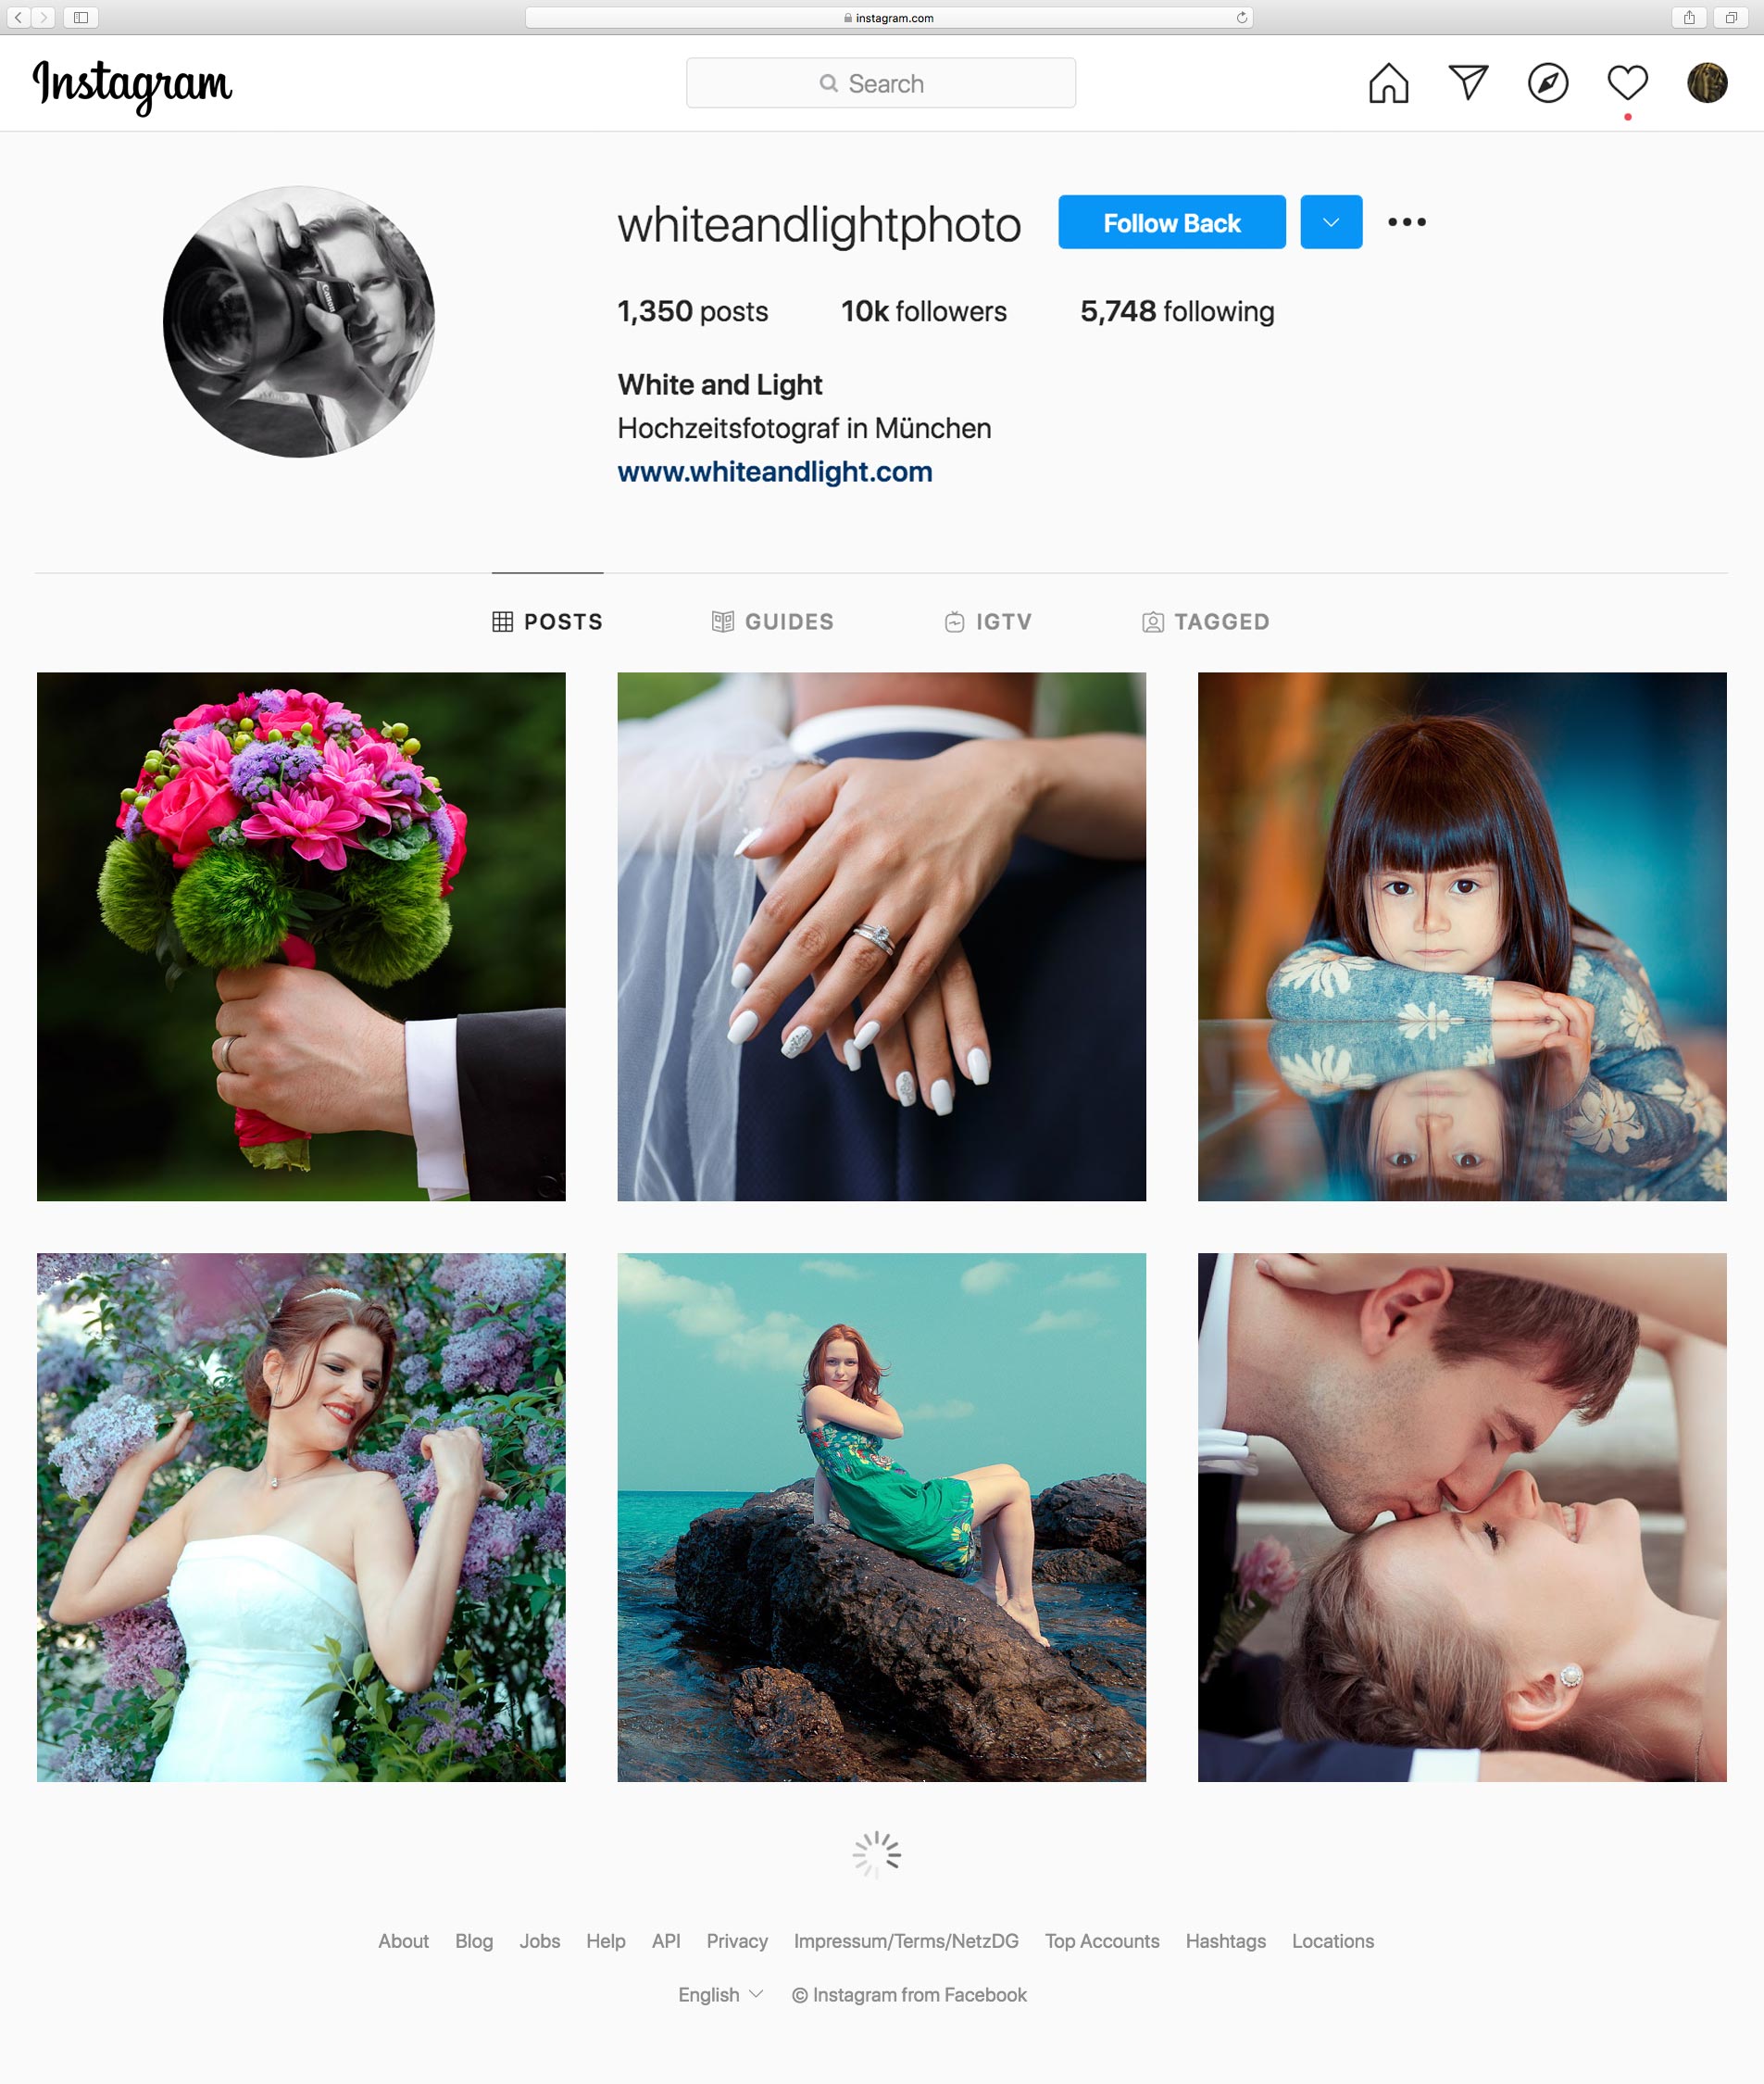 10K Followers auf Instagram kürzlich erreicht